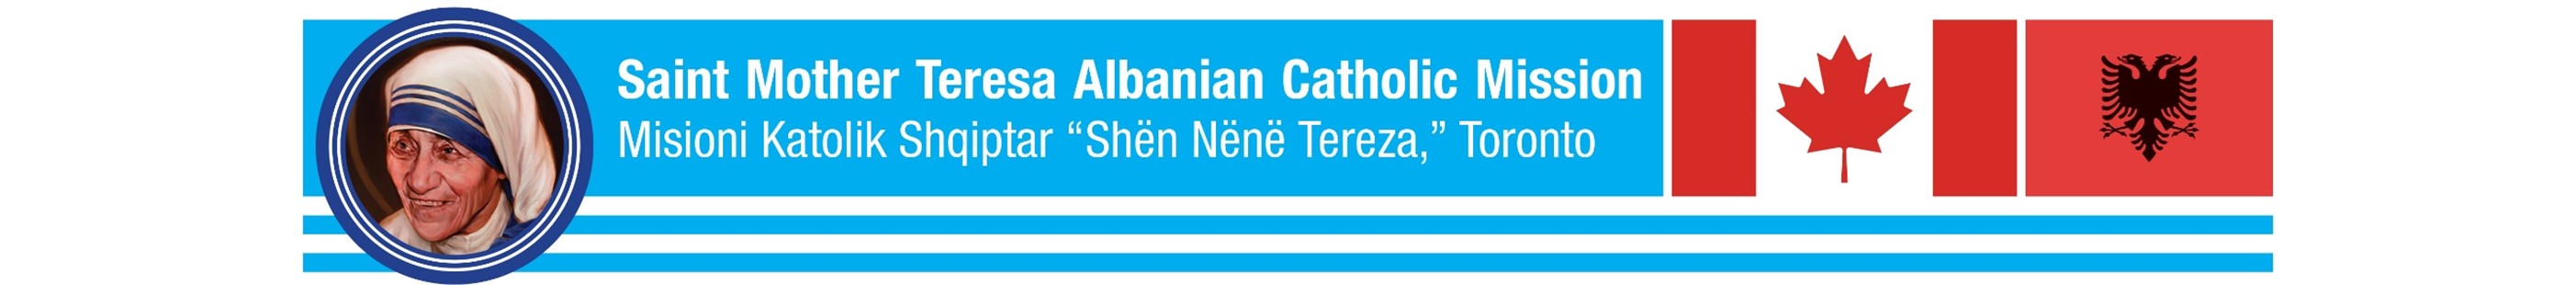 Saint Mother Teresa Mission Banner